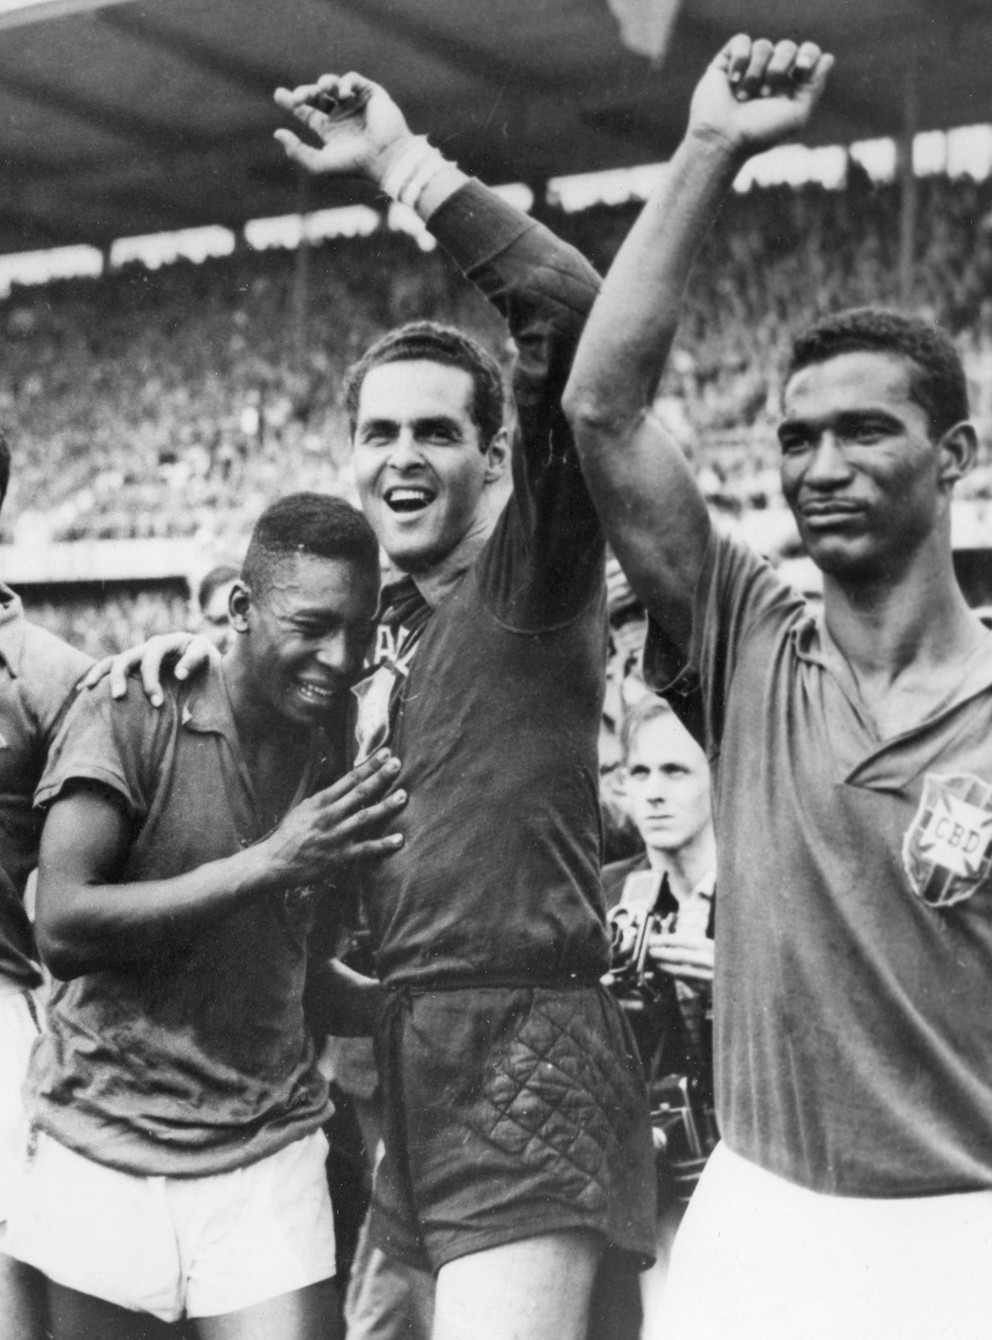 17-ročný Pelé (vľavo) plače opierajúc sa o brankára Gilmara Dos Santosa Nevesa po víťazstve Brazílie nad Švédskom 5:2 vo finále MS 1958 v Štokholme.